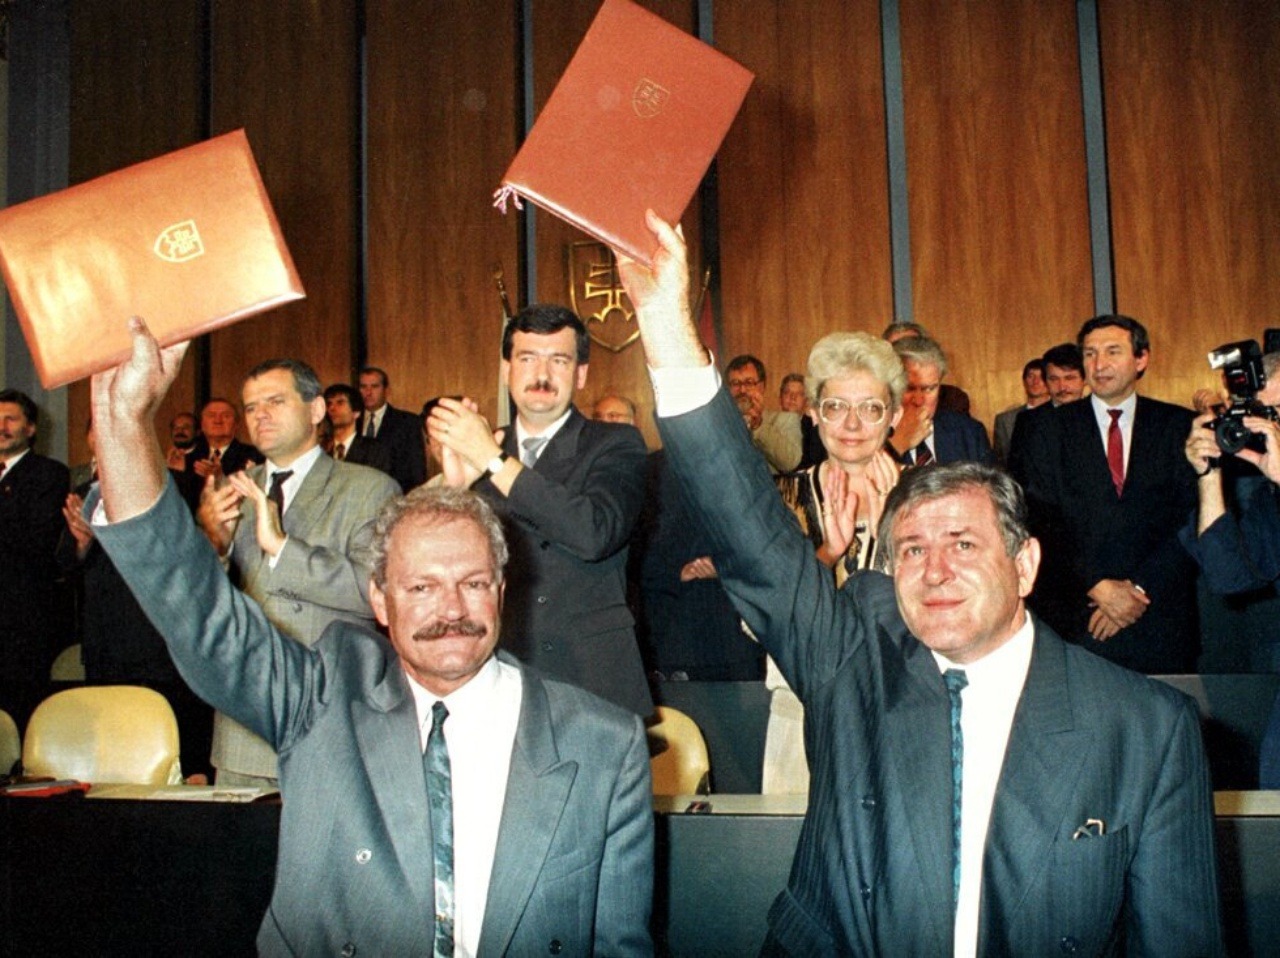 Predseda vlády SR Vladimír Mečiar, predseda NR SR, a Ivan Gašparovič17. júla 1992 v budove parlamentu v Bratislave zdravia poslancov po podpise Deklarácie o zvrchovanosti Slovenskej republiky